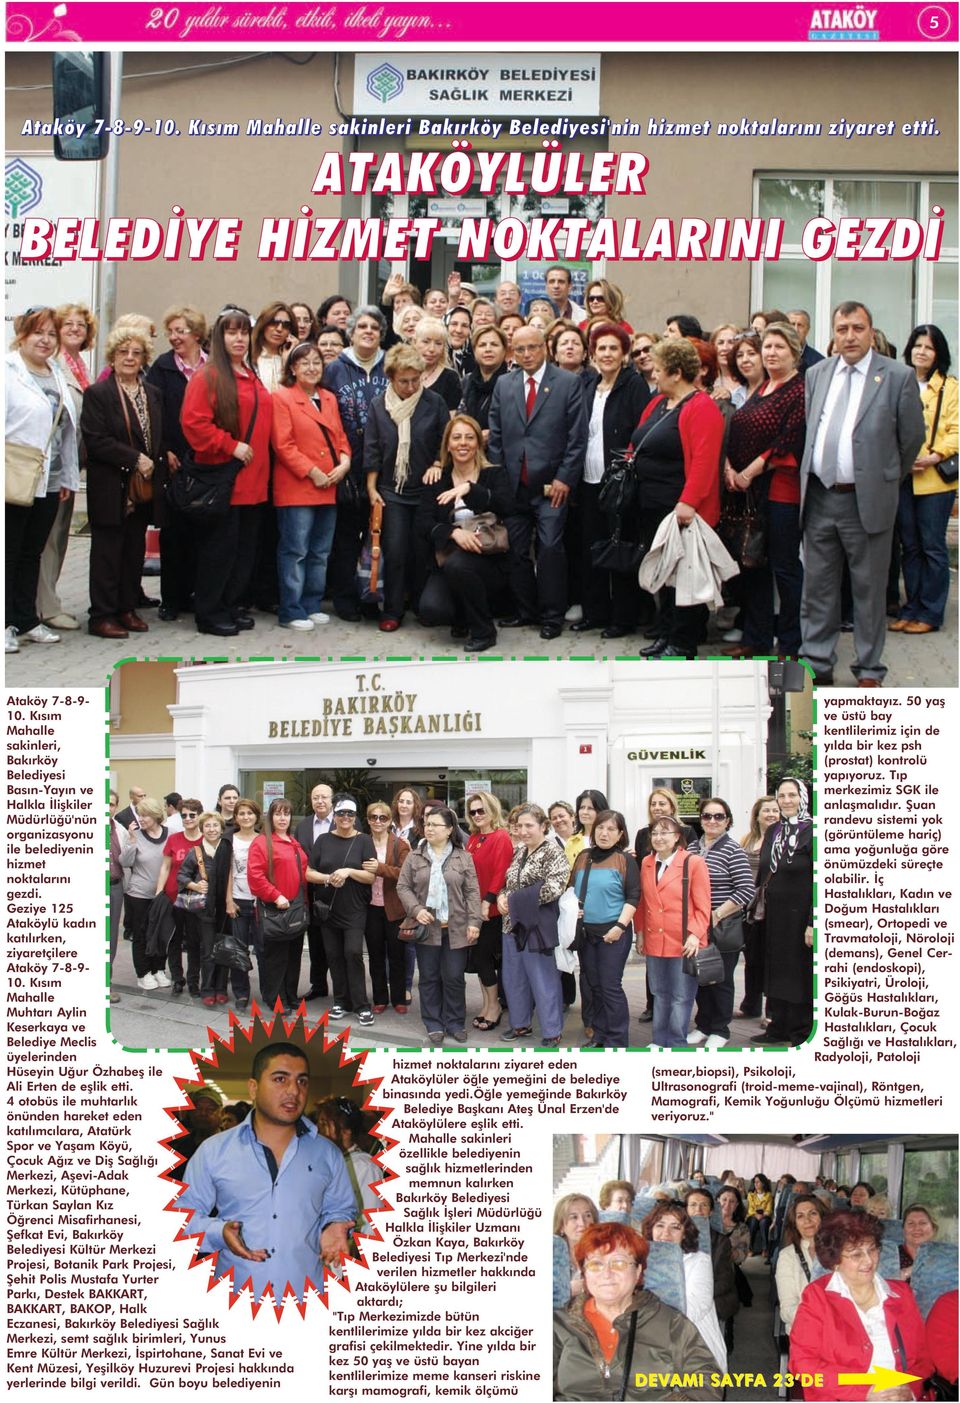 Geziye 125 Ataköylü kadın katılırken, ziyaretçilere Ataköy 7-8-9-10. Kısım Mahalle Muhtarı Aylin Keserkaya ve Belediye Meclis üyelerinden Hüseyin Uğur Özhabeş ile Ali Erten de eşlik etti.